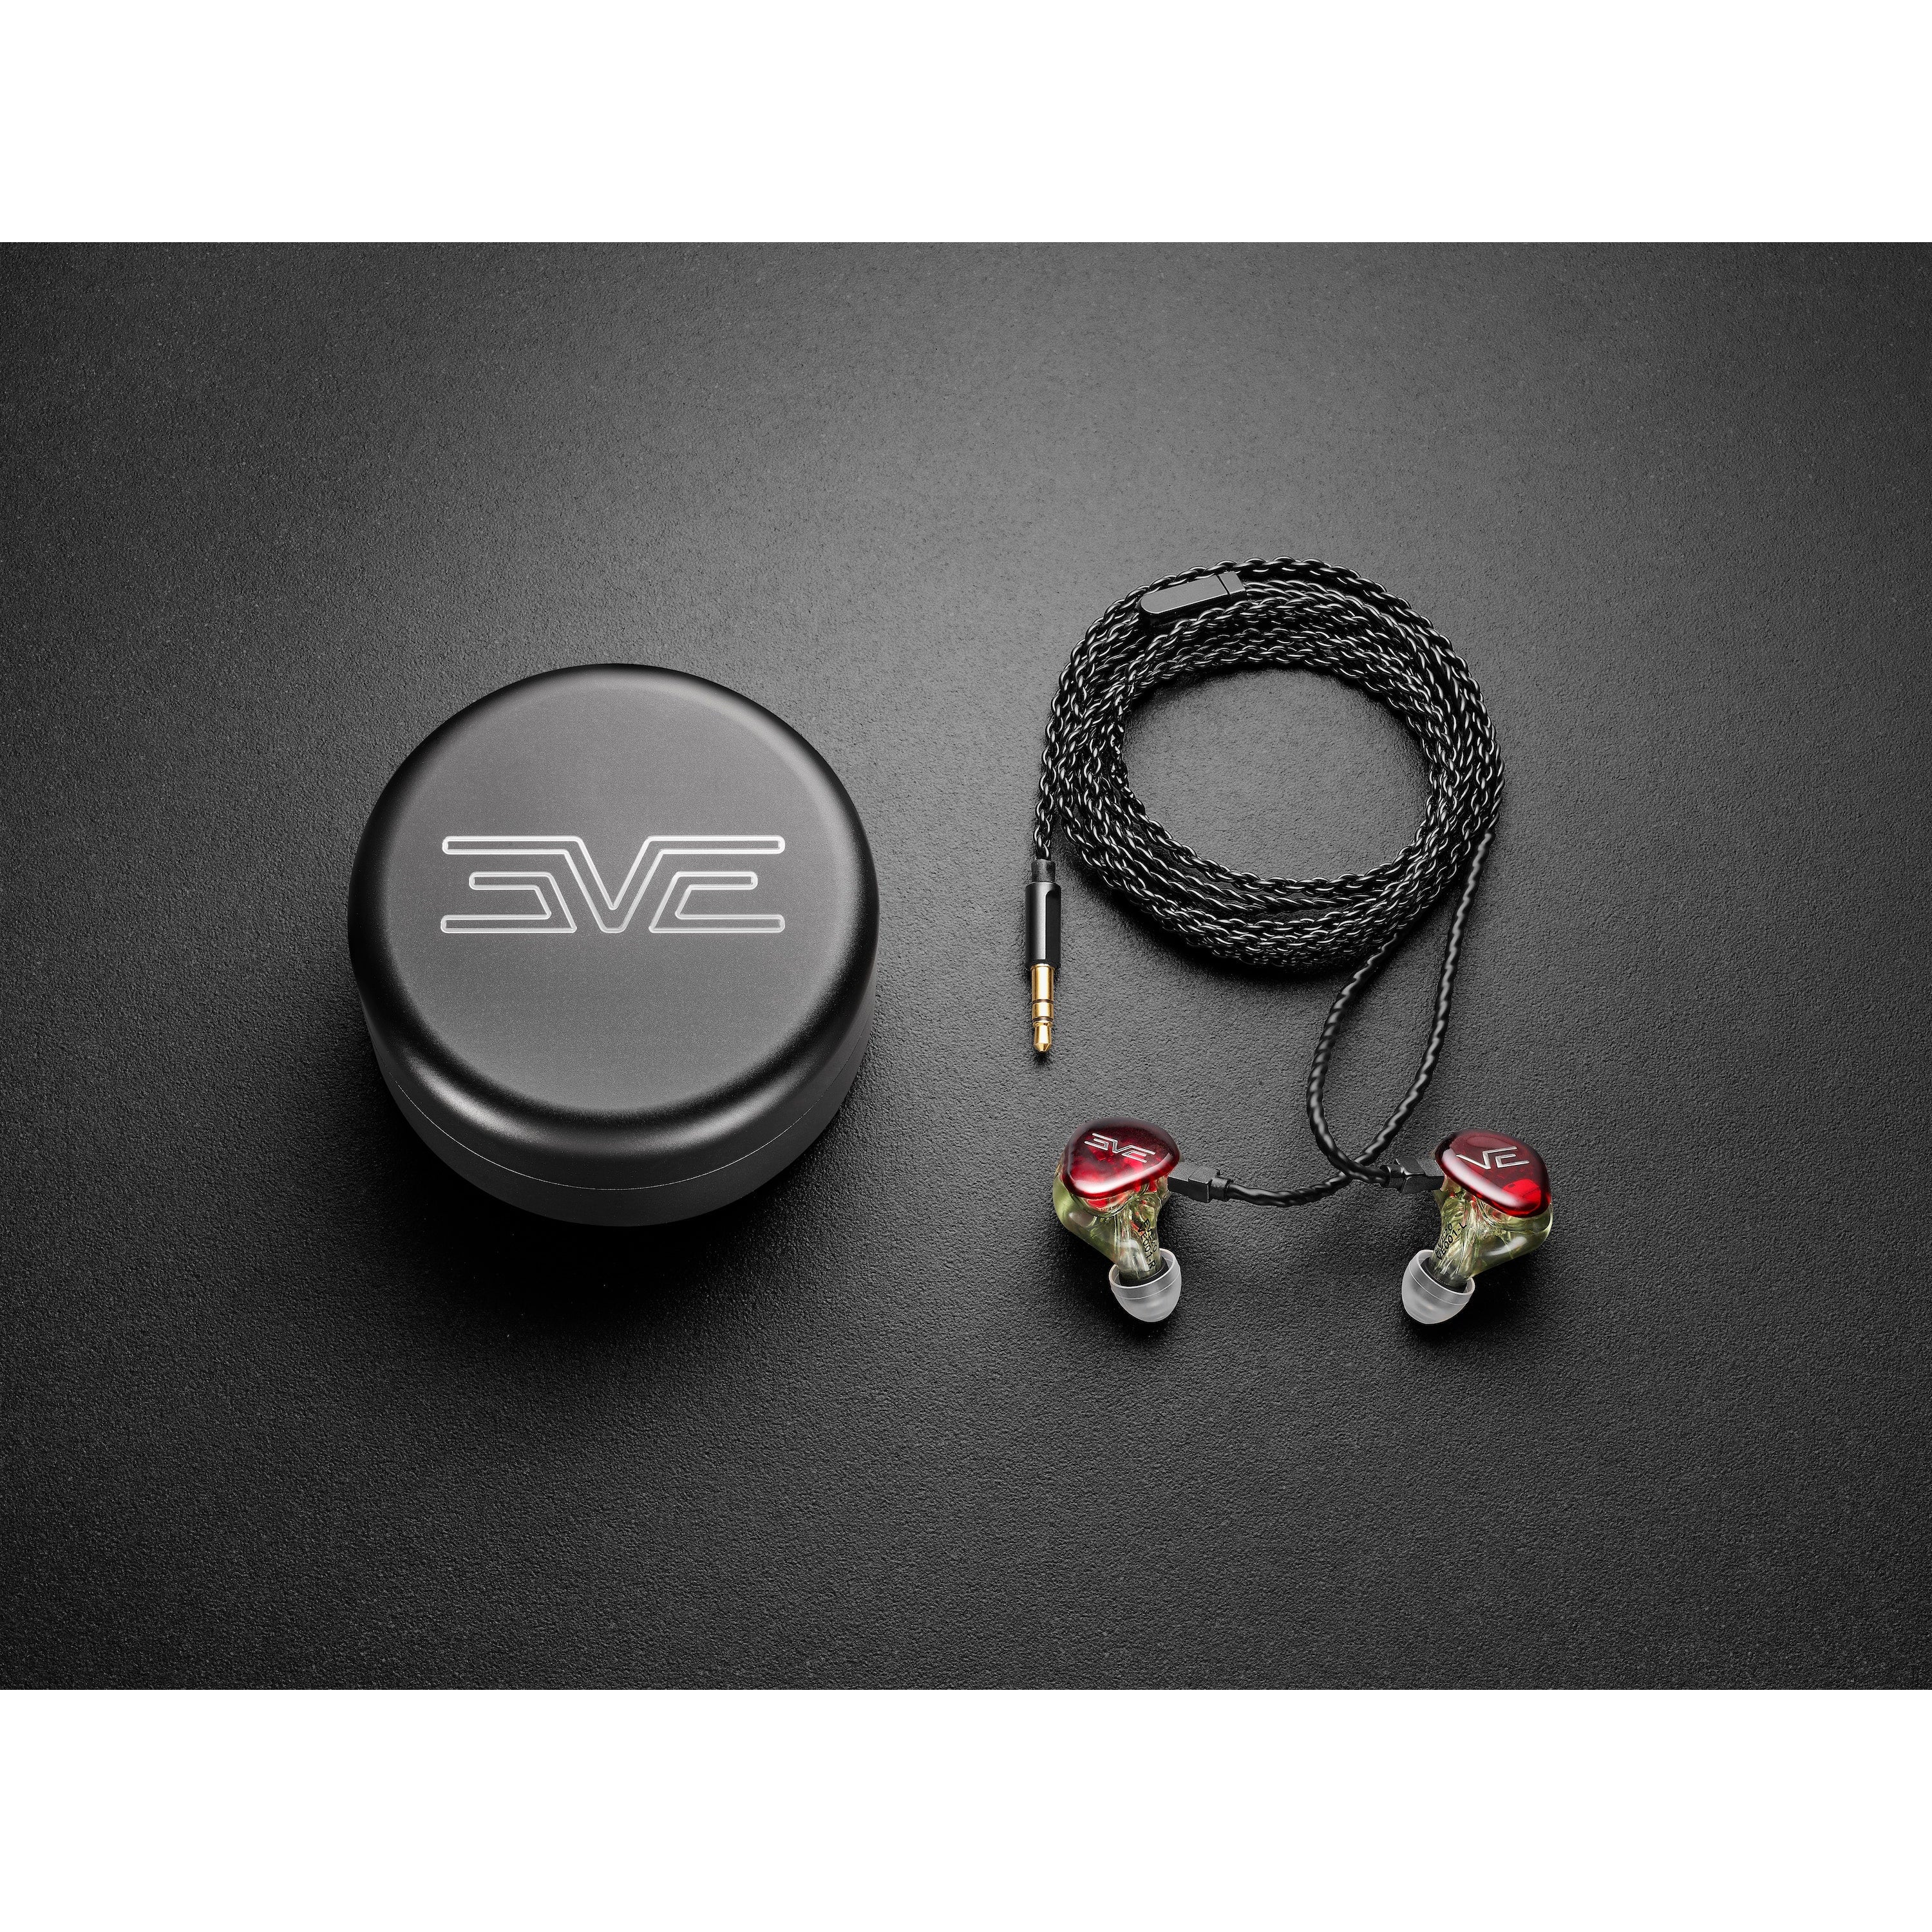 売れ筋ランキングも EVE ears Vision イヤホン 20 Fit) (Universal ...